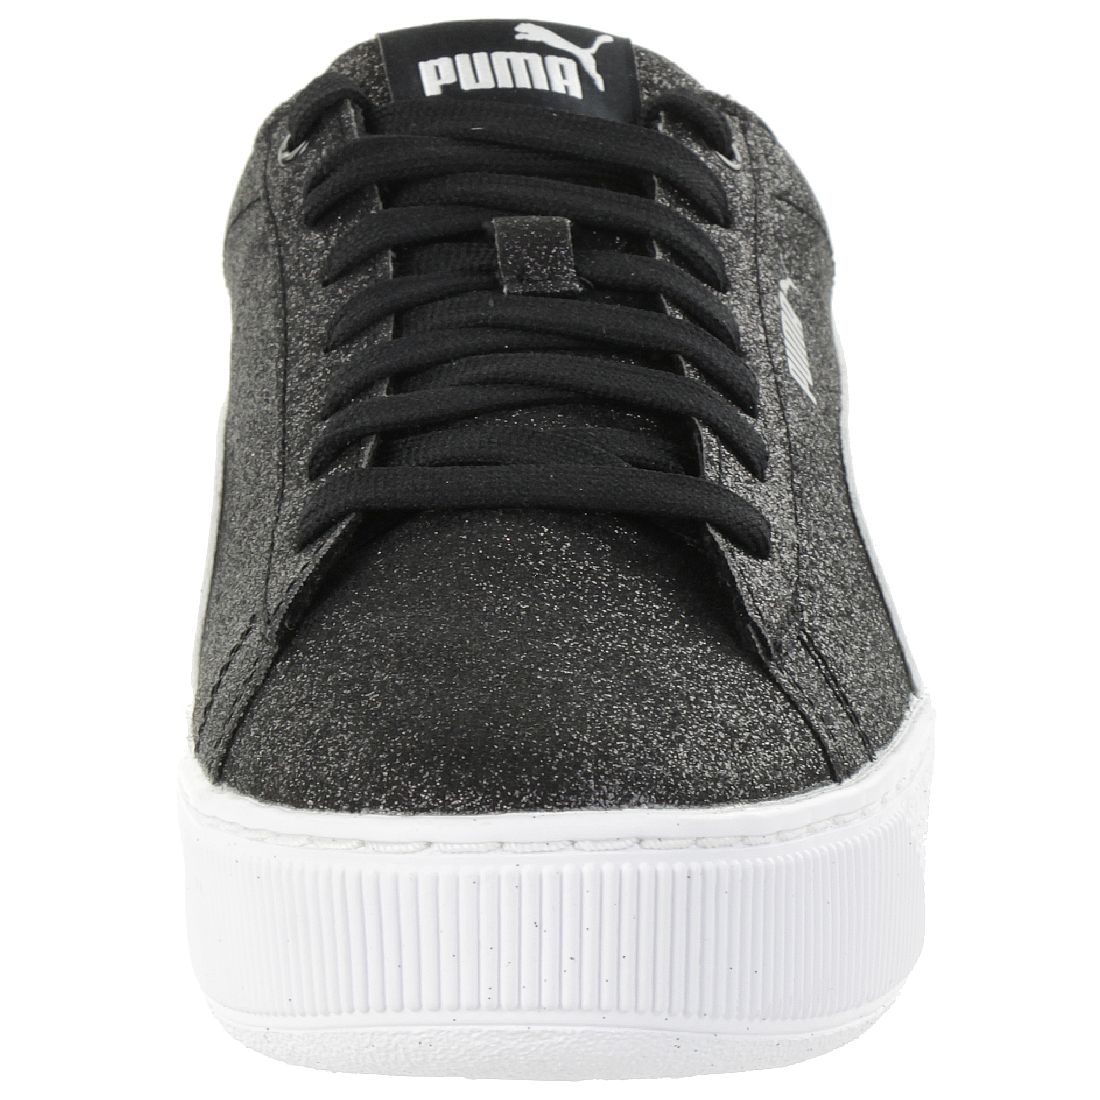 Puma Vikky Platform Glitzer Junior Mädchen Damen Schuh schwarz 366856 02